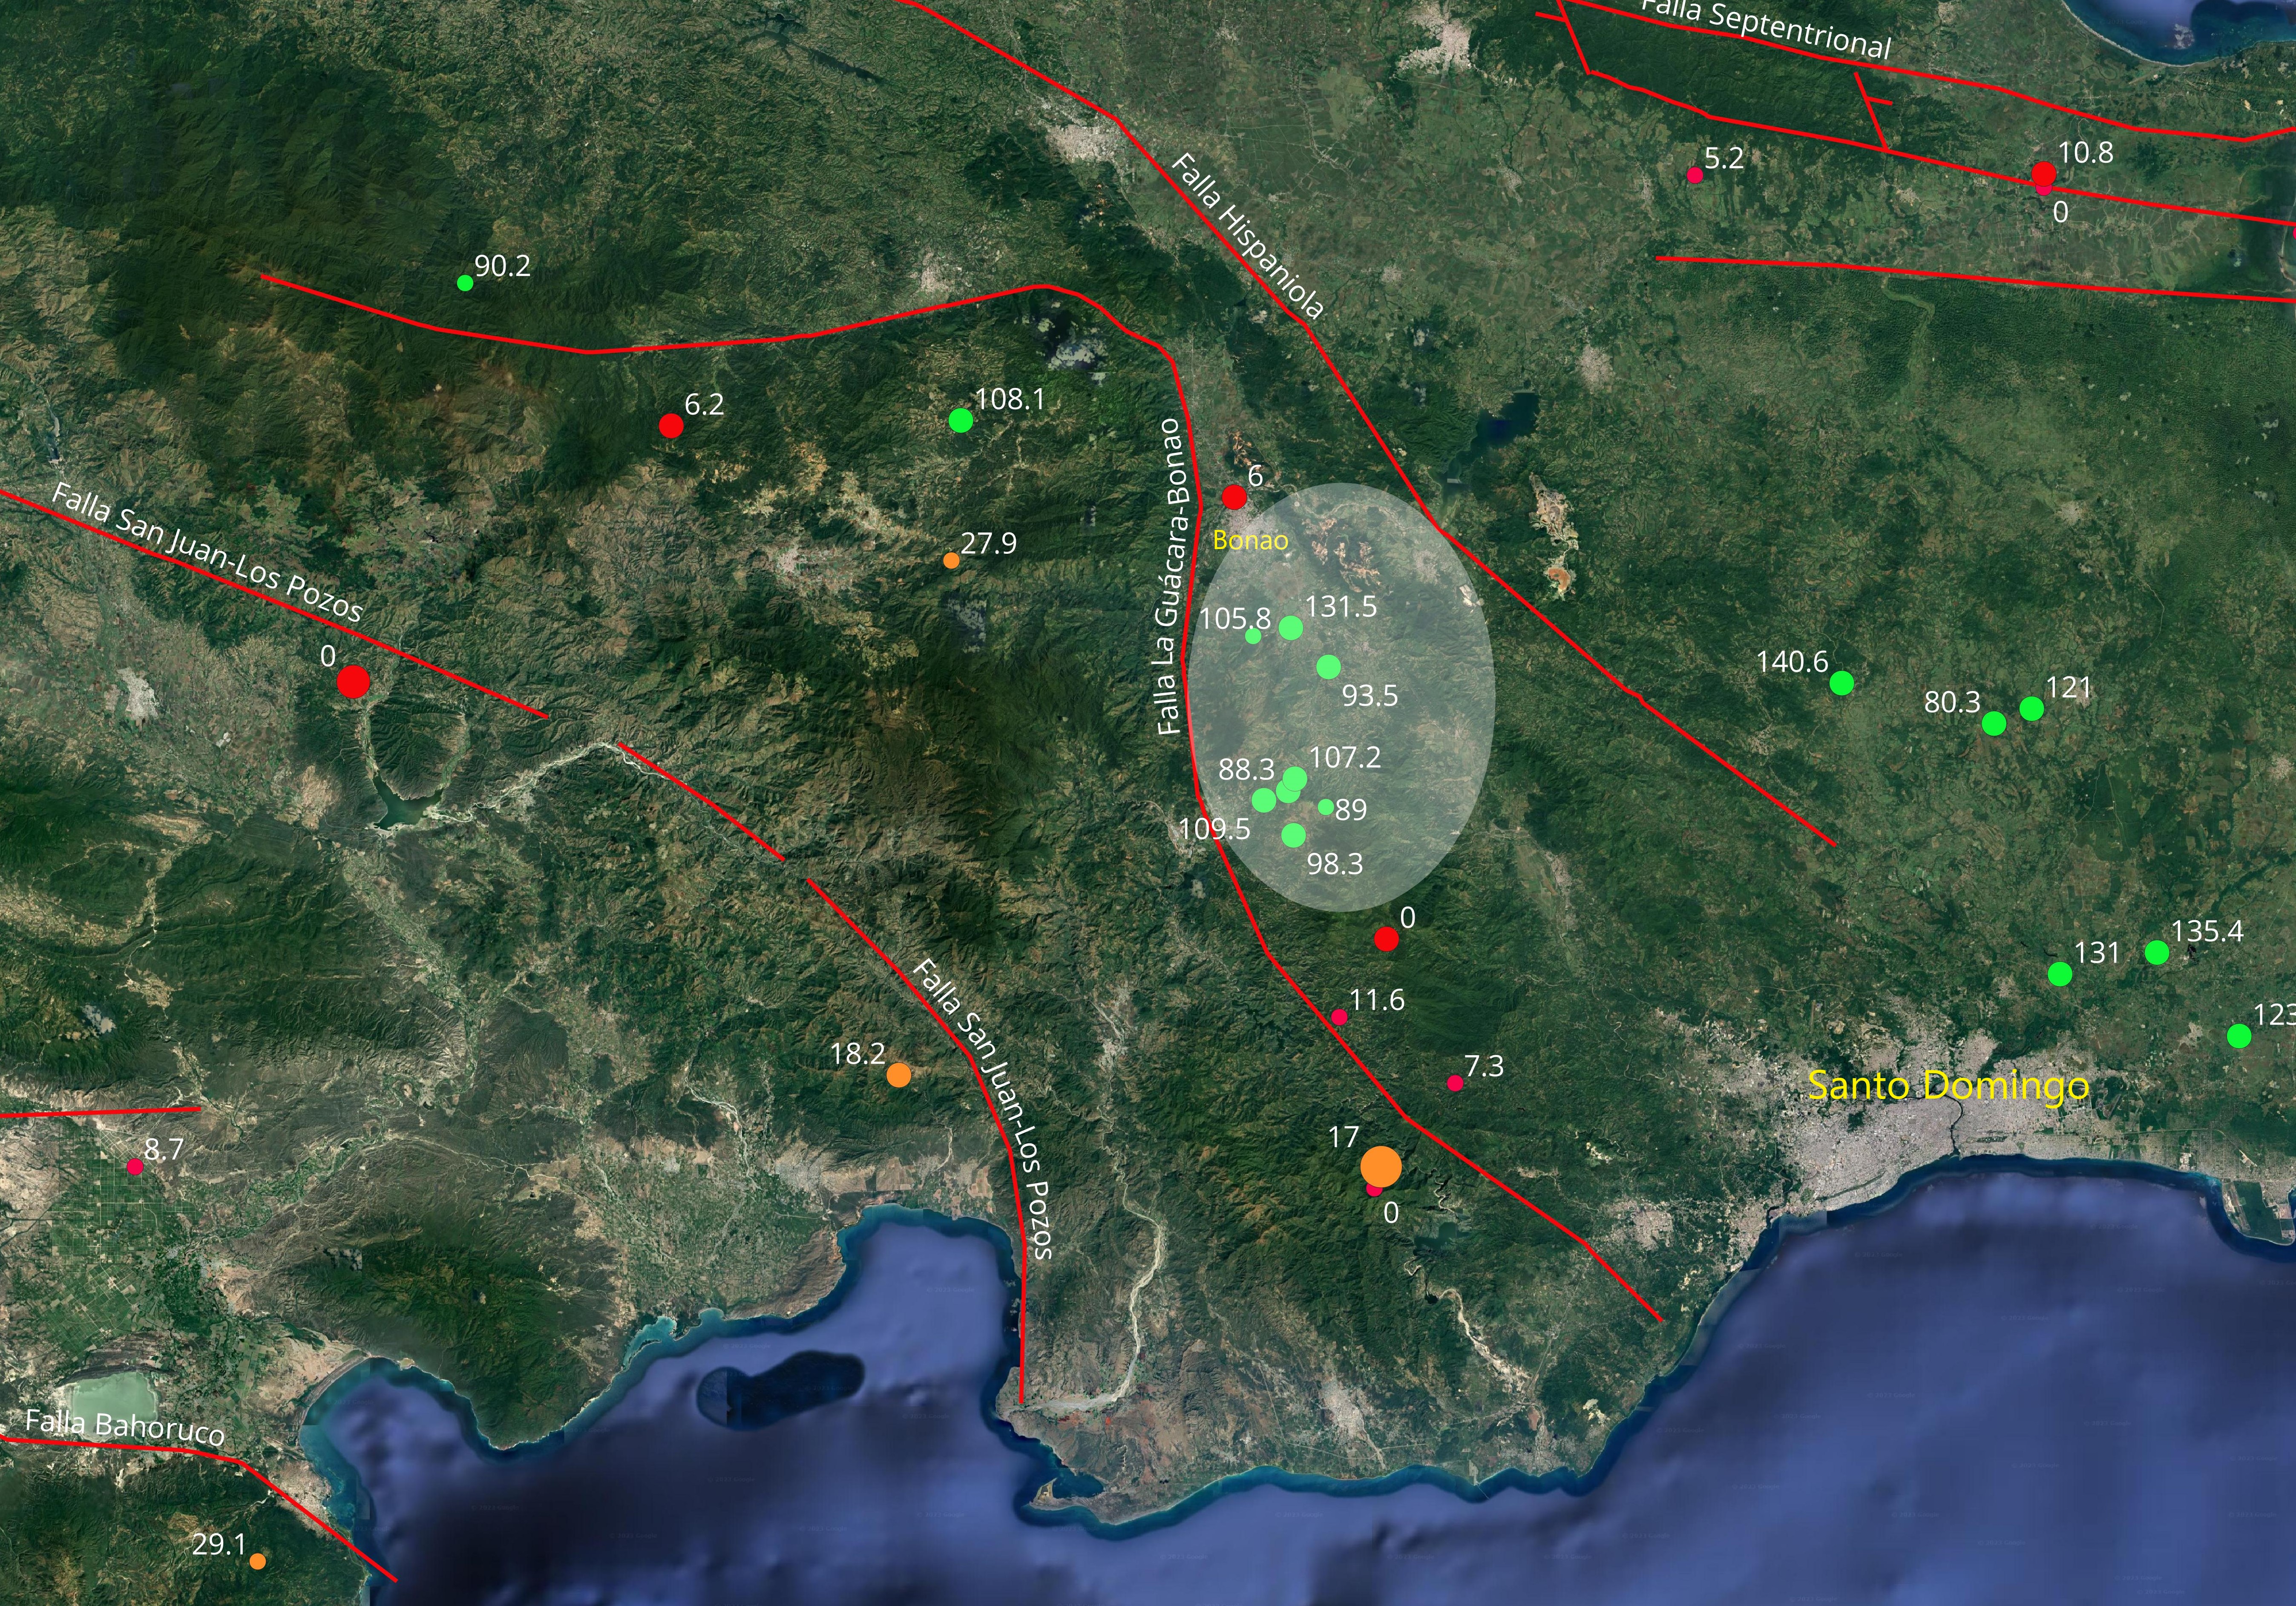 Detalle sismicidad intermedia al sur de Bonao. Se indican las profundidades en km.